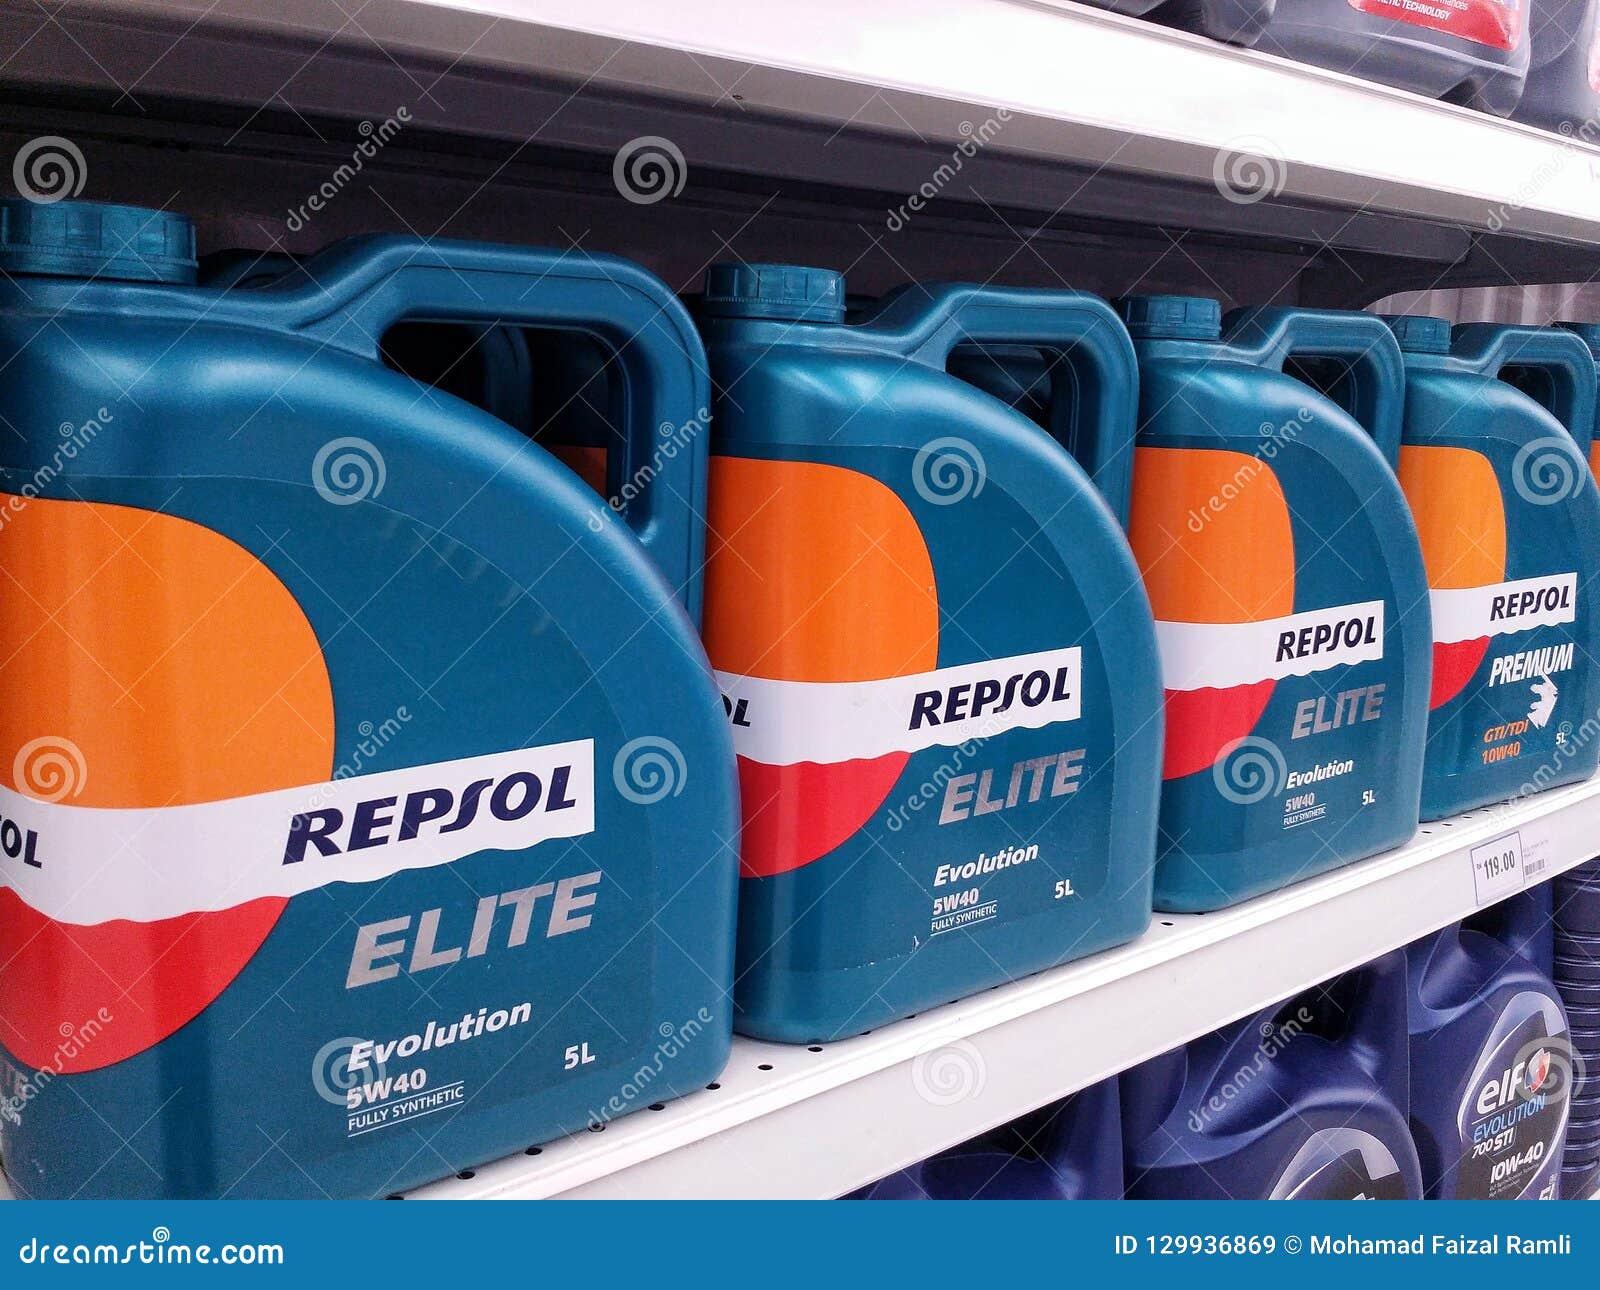 Репсол масло производитель. Repsol 5w40. Repsol завод. Repsol масло. Масло Репсол производитель.